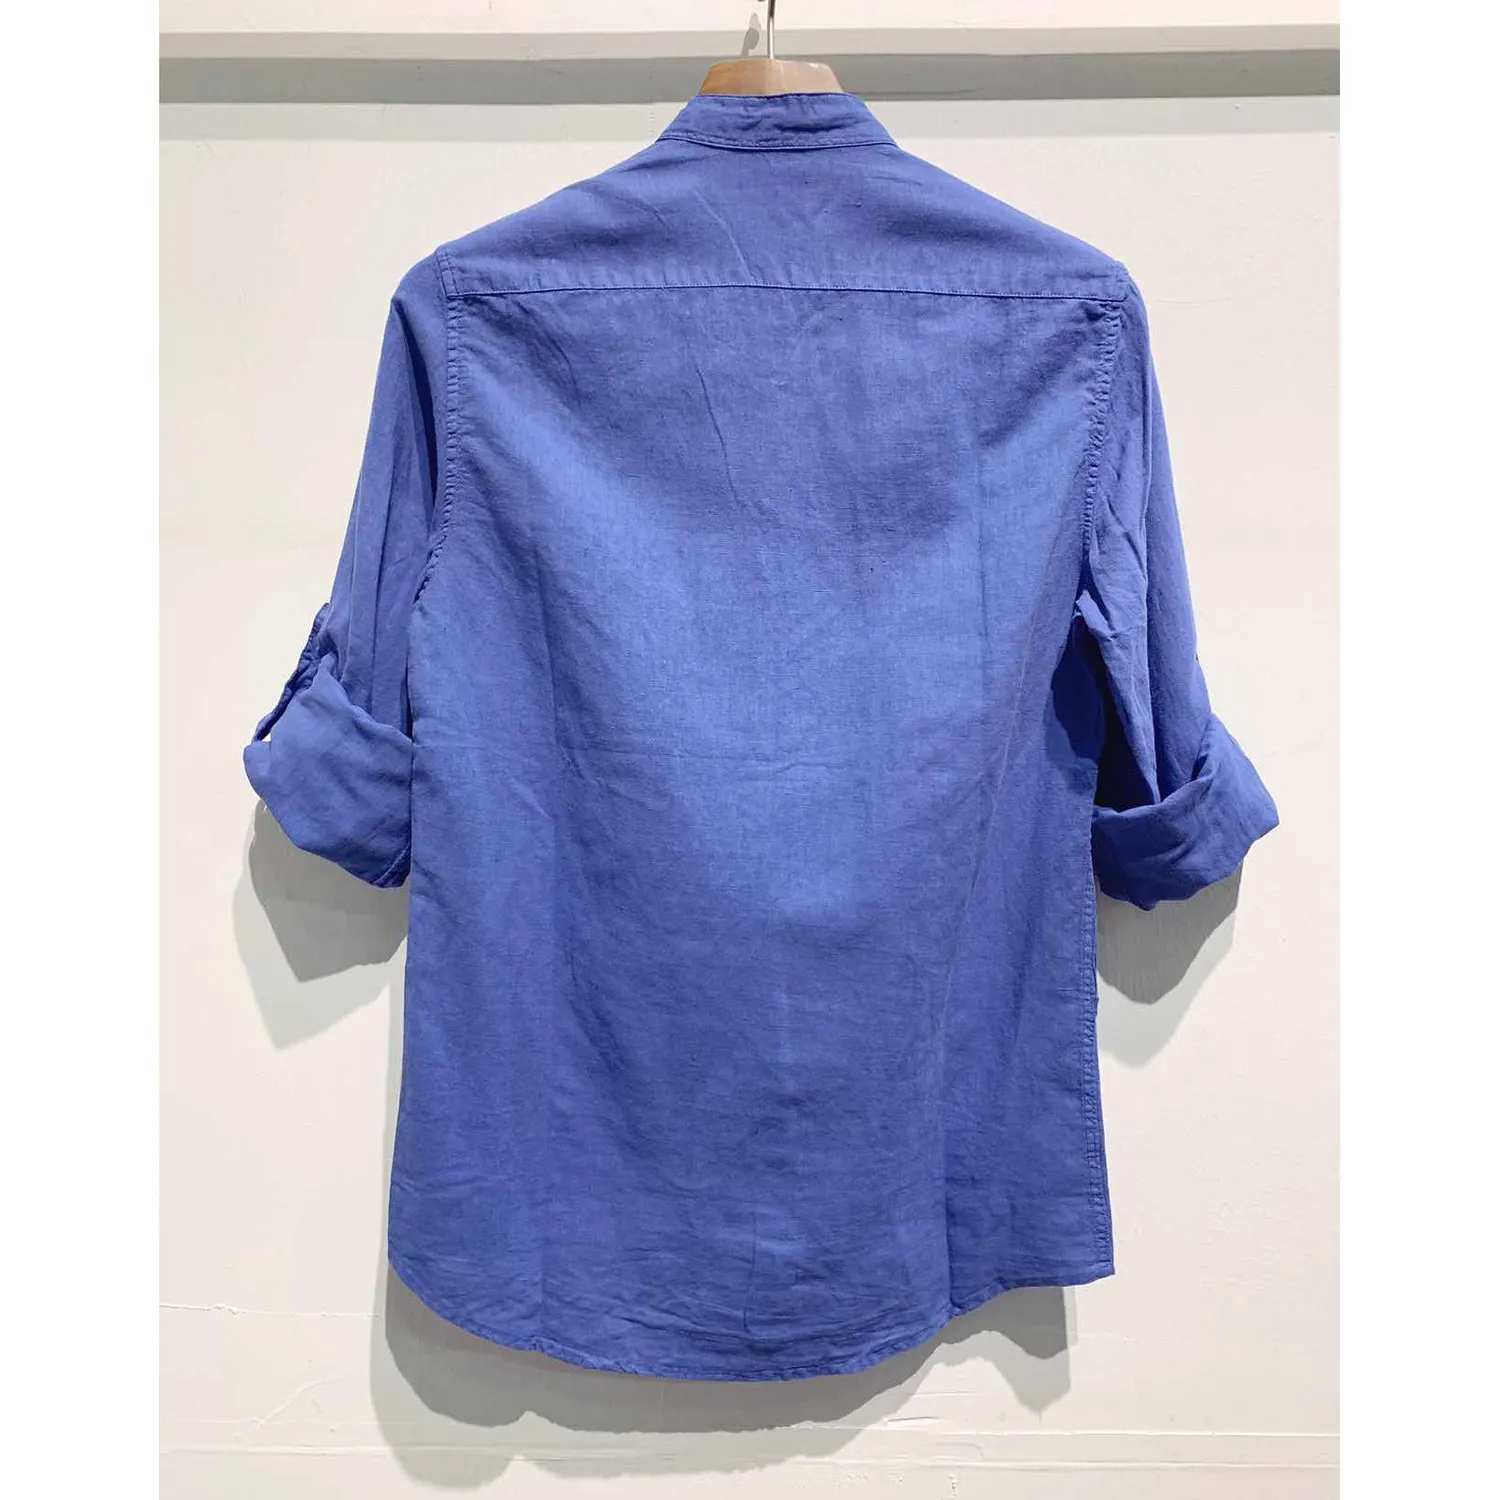 Ανδρικό μακρυμάνικο πουκάμισο λινό μπλε Ι